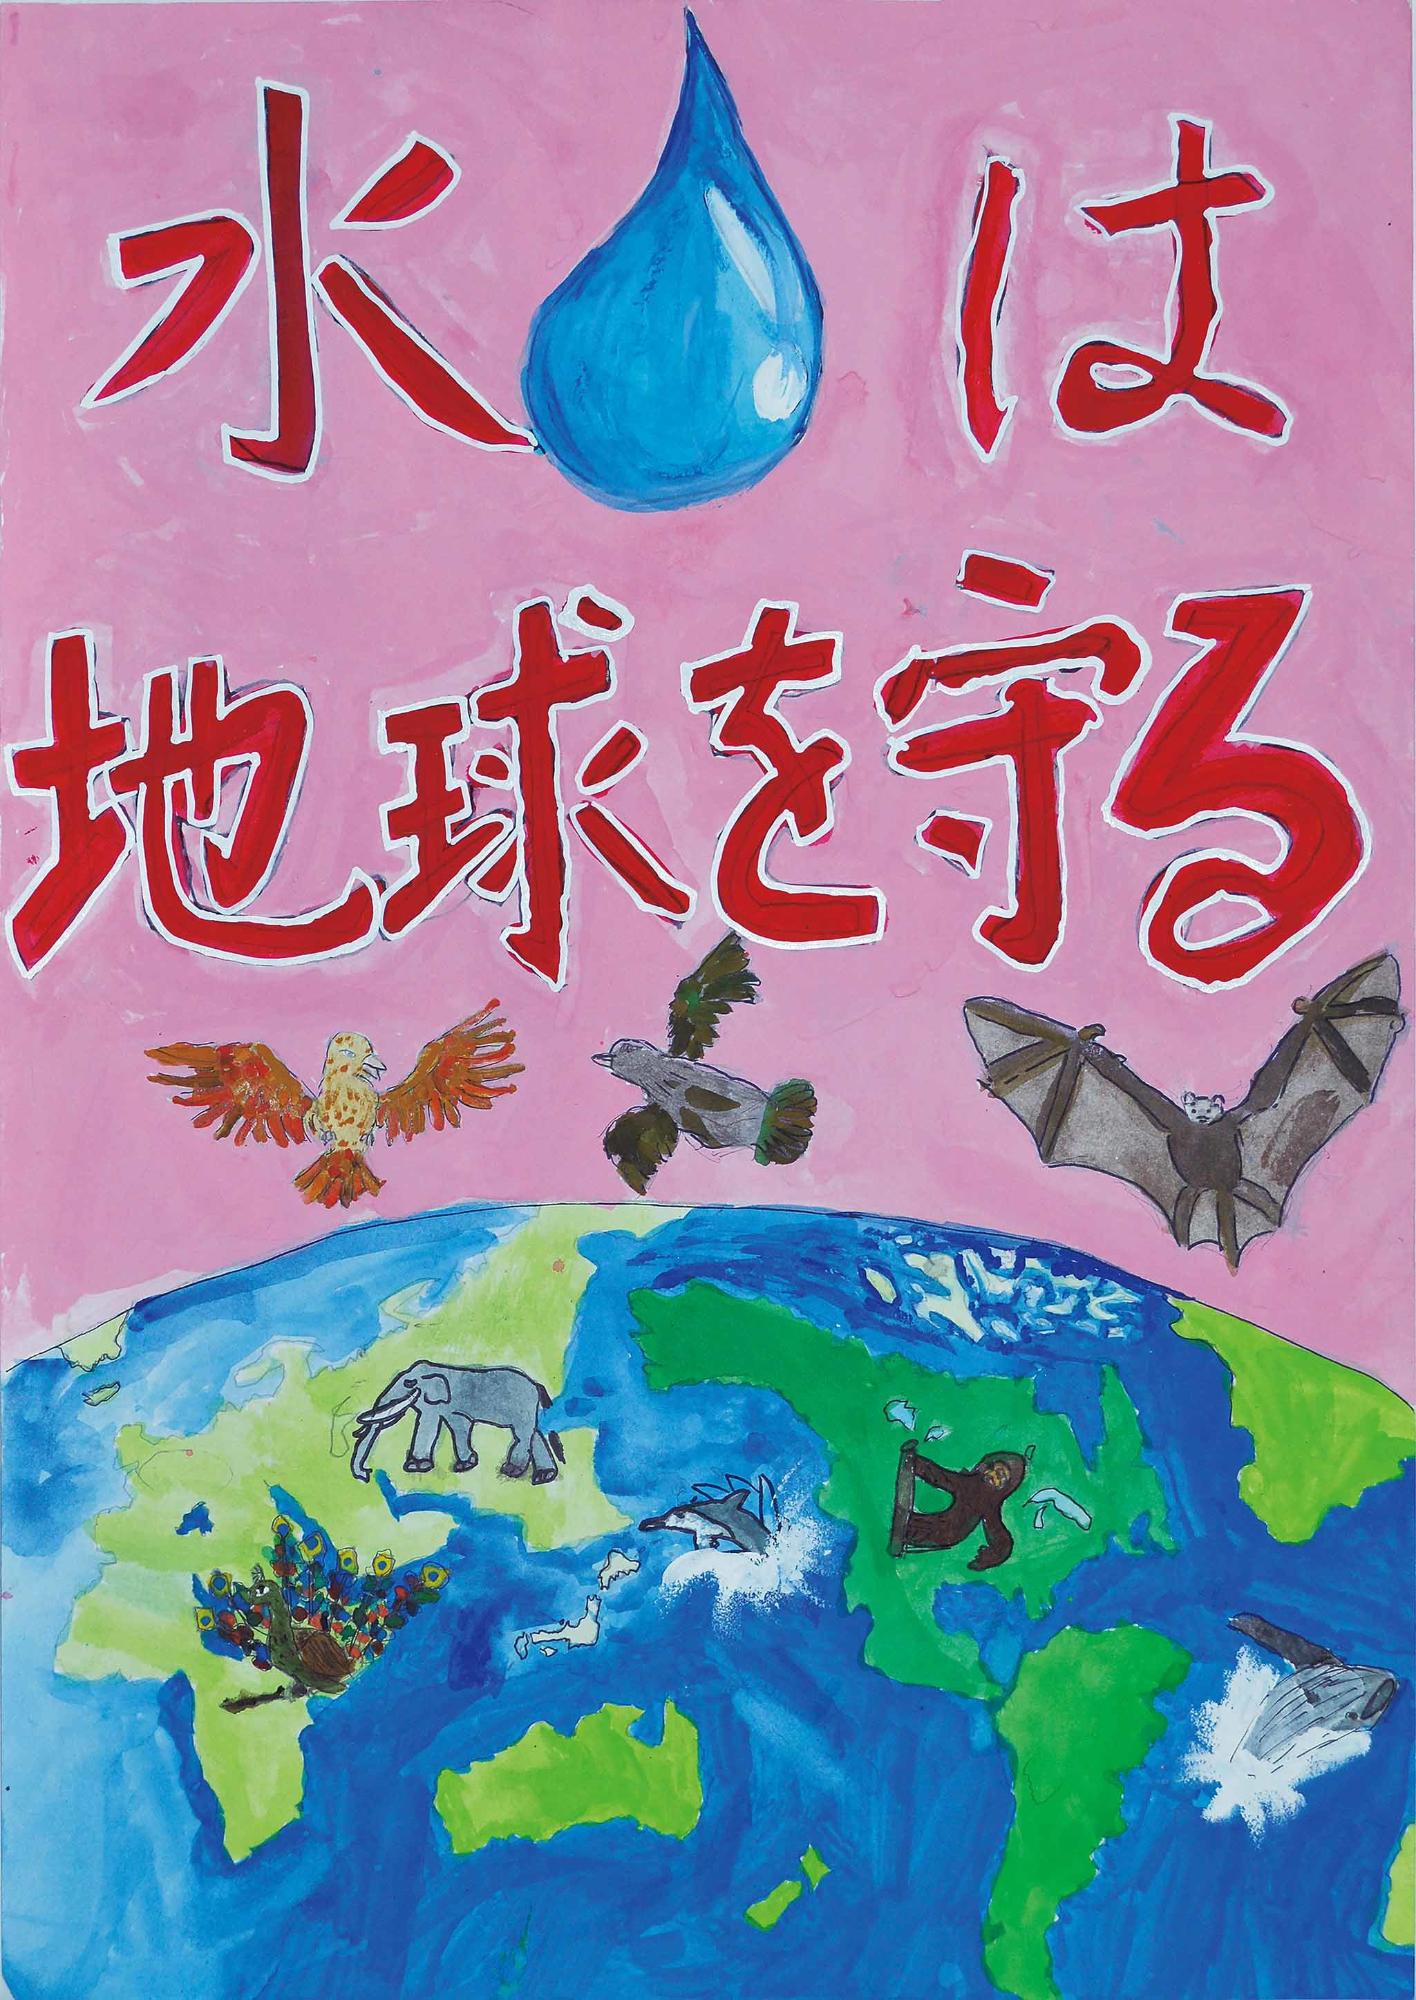 優秀作品 王子台小学校 6年 廣野正夫さん（水は地球を守る、ピンク色の背景に青い地球と動物たちが描かれている）